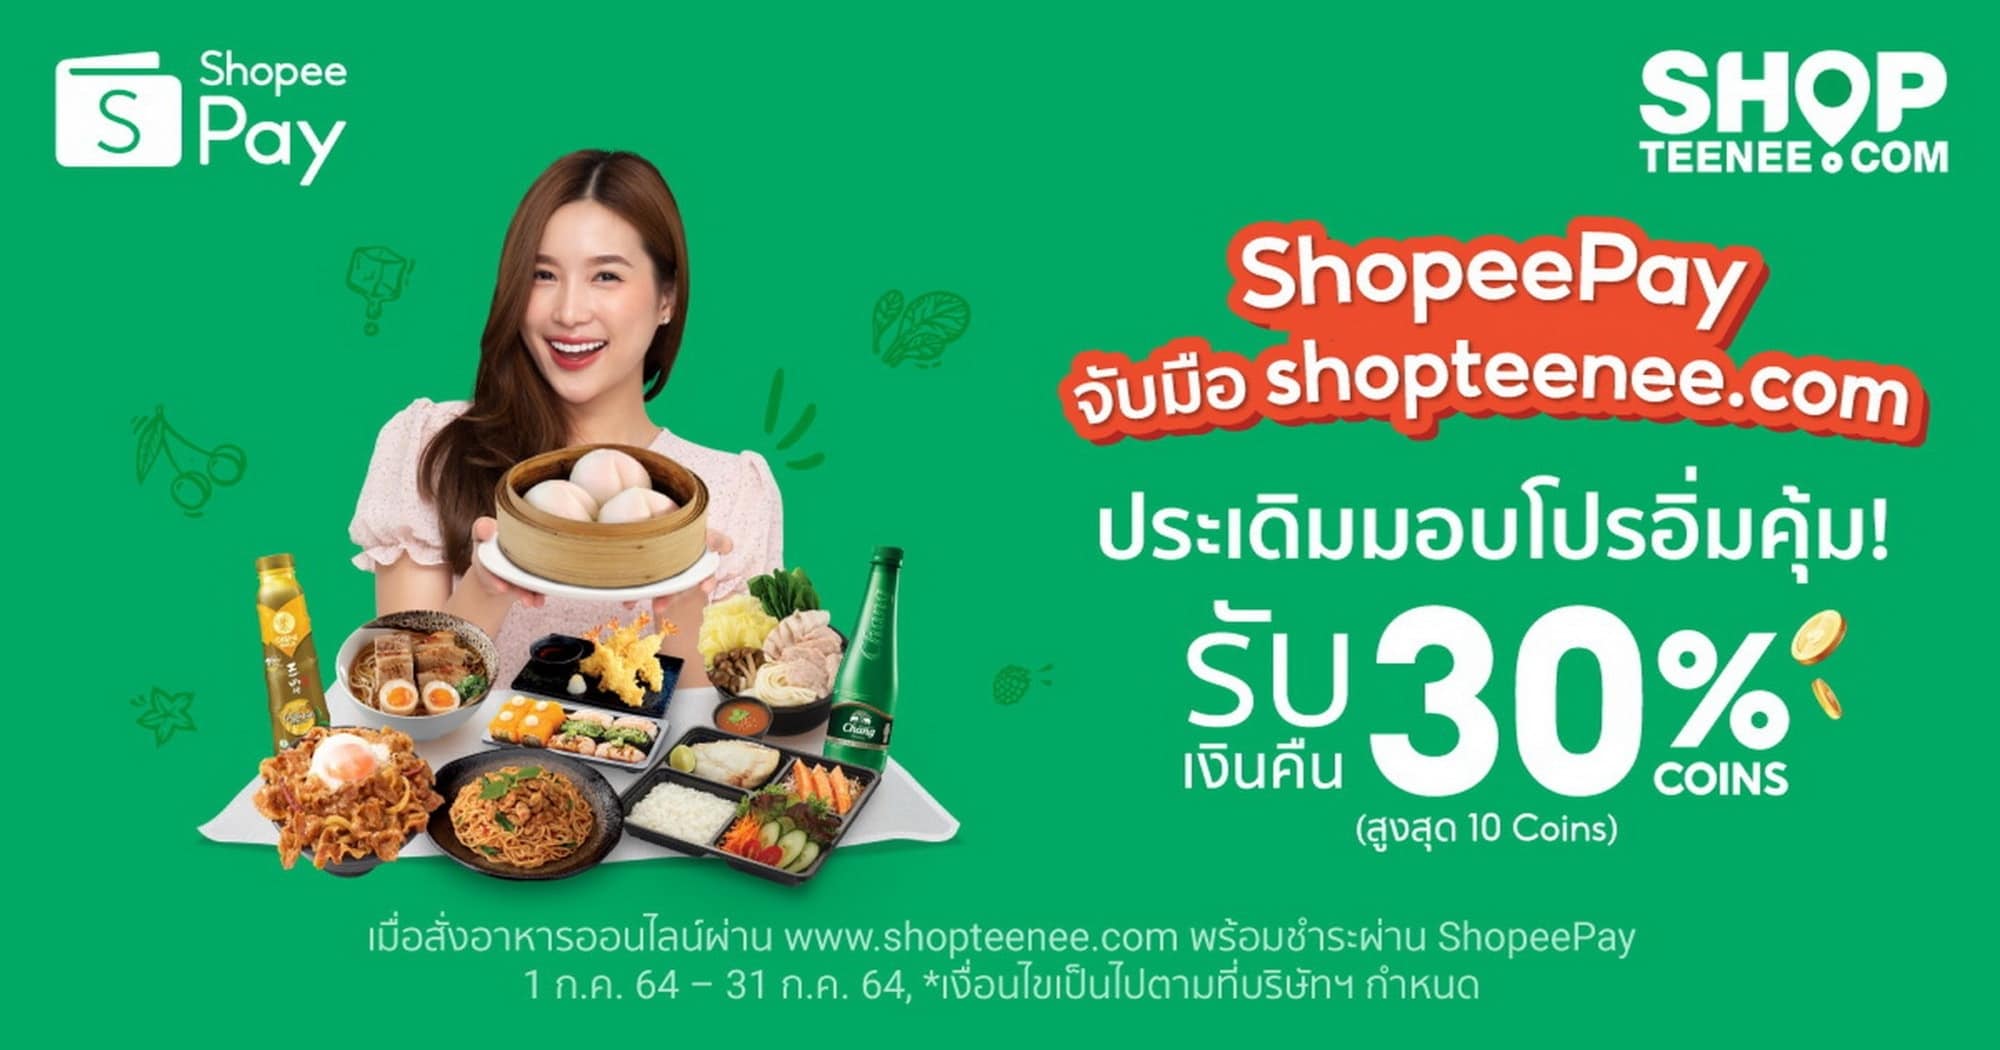 ‘ShopeePay’ หนุนตลาดออนไลน์ จับมือ ‘shopteenee.com’ มอบโปรฯ อิ่ม คุ้ม กับร้านอาหารชั้นนำหลากสไตล์ 1